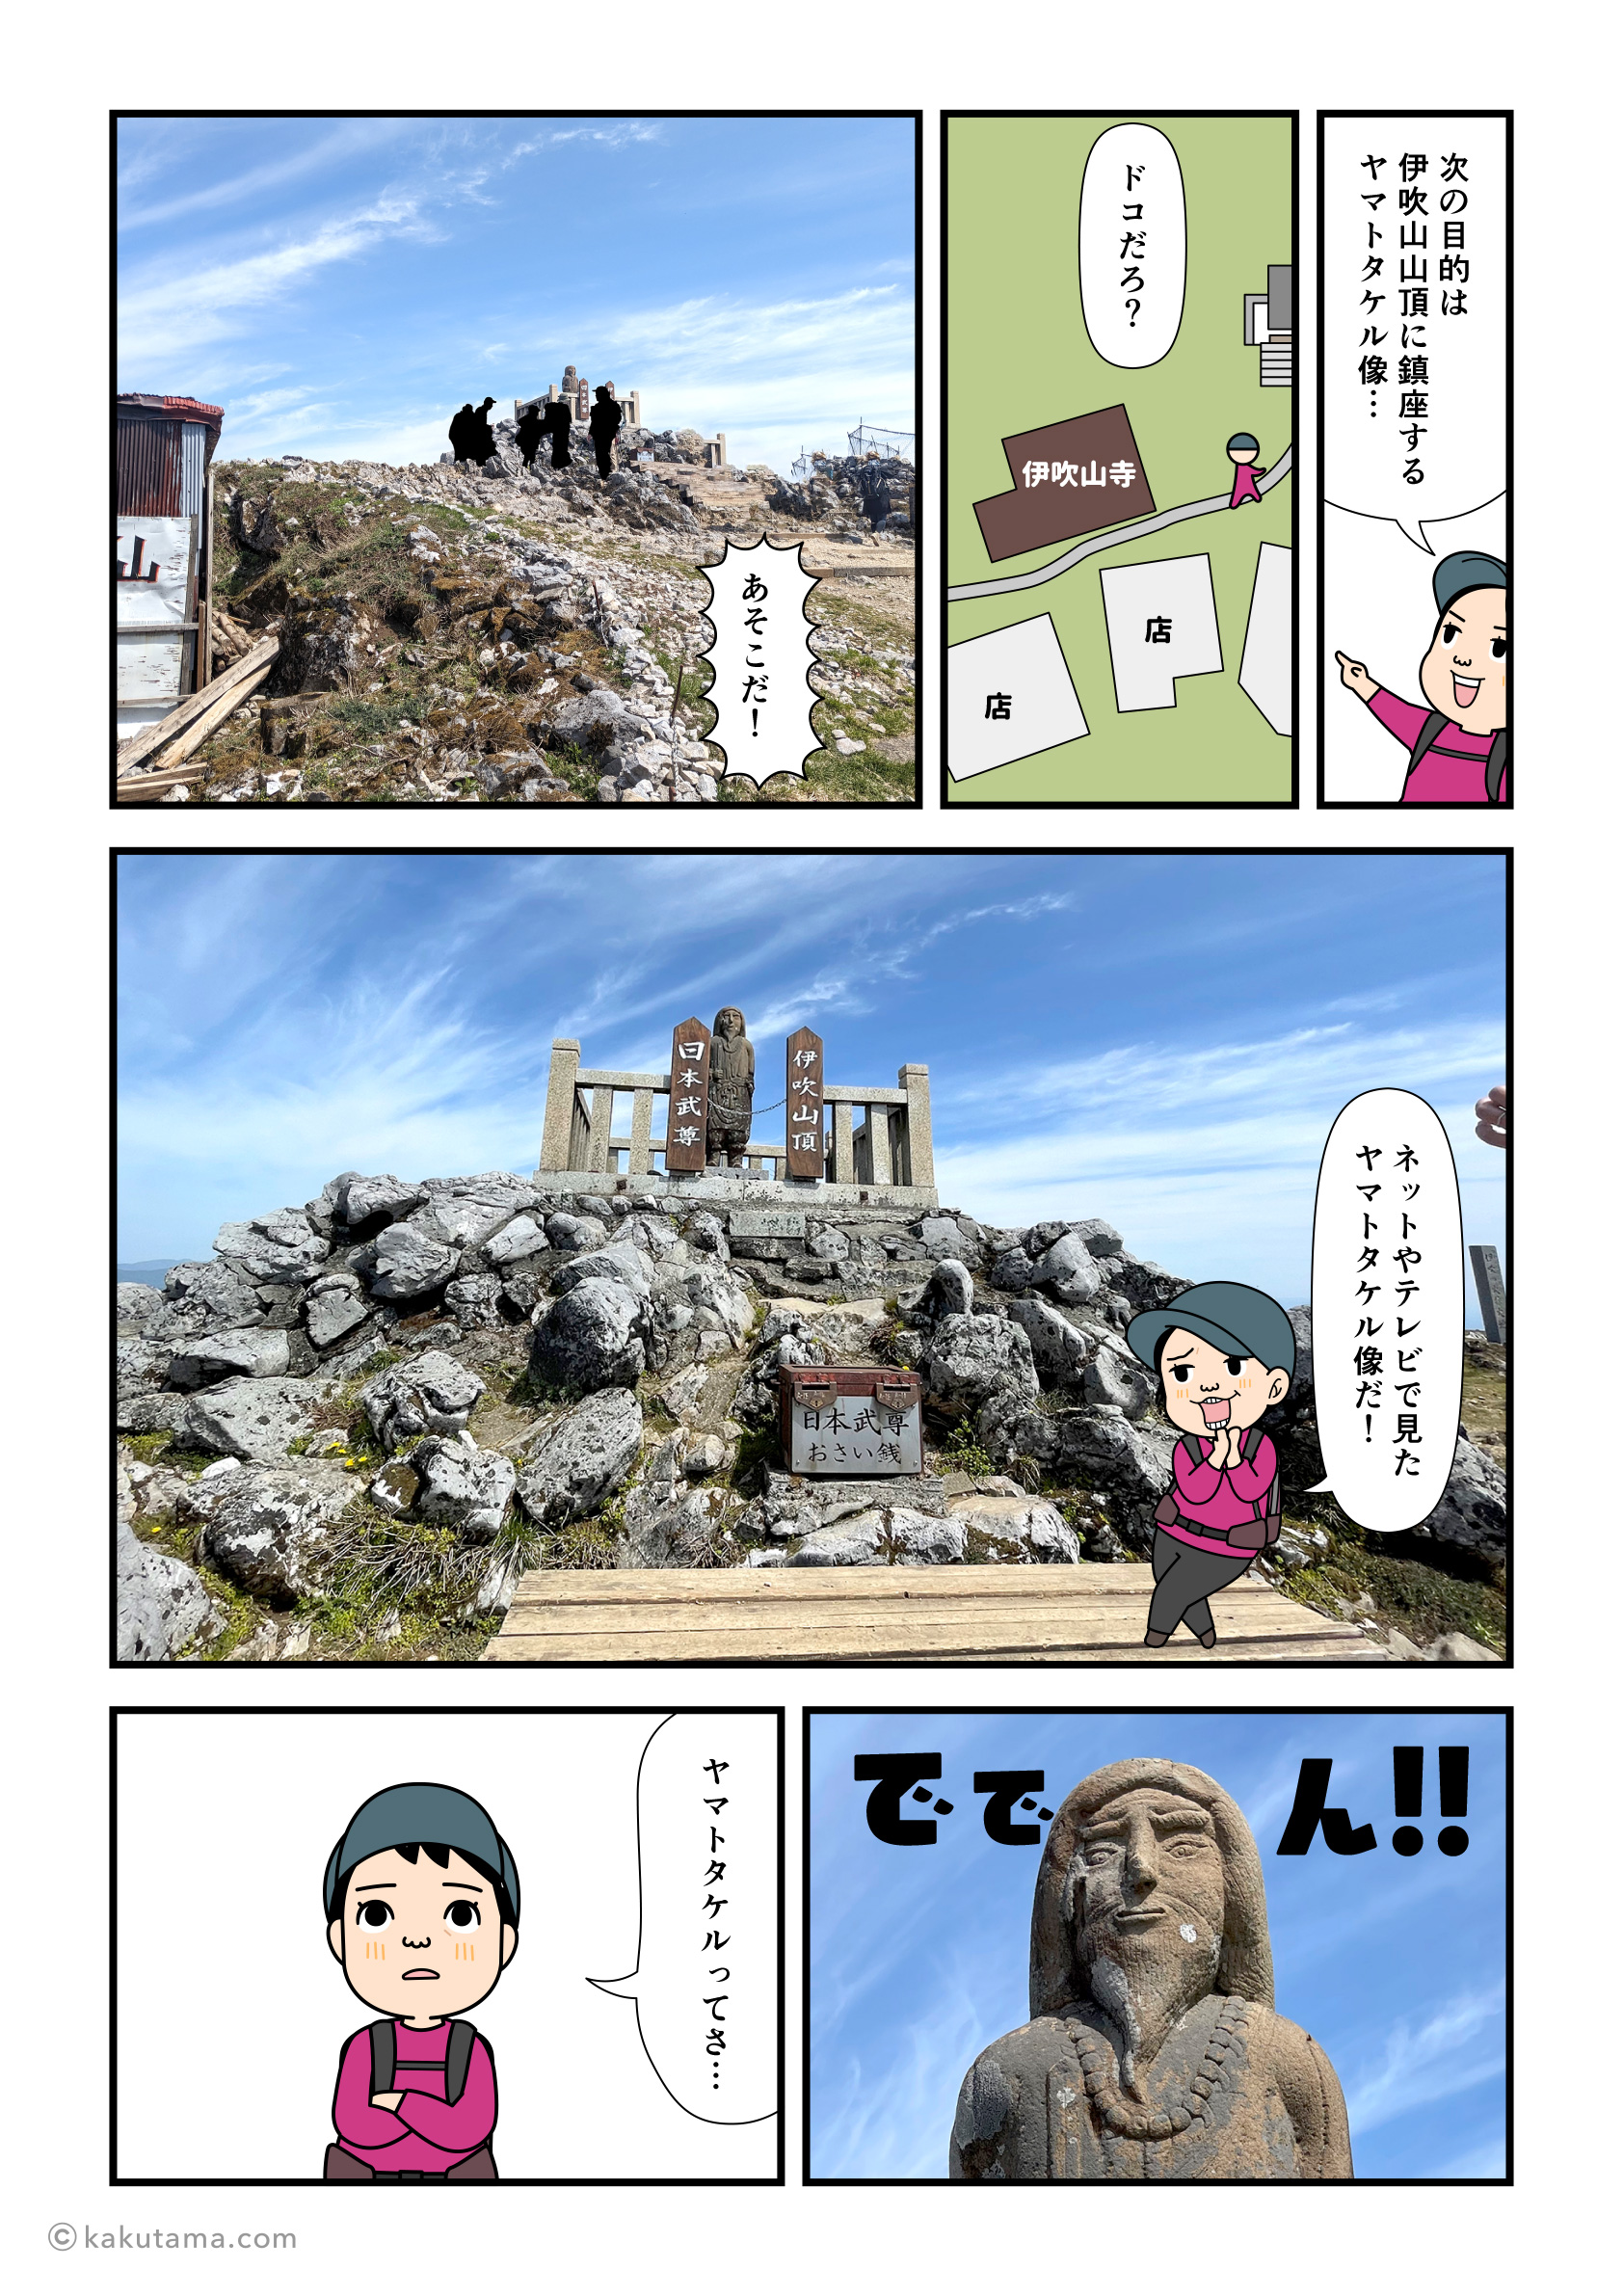 伊吹山山頂でヤマトタケル像と会う漫画